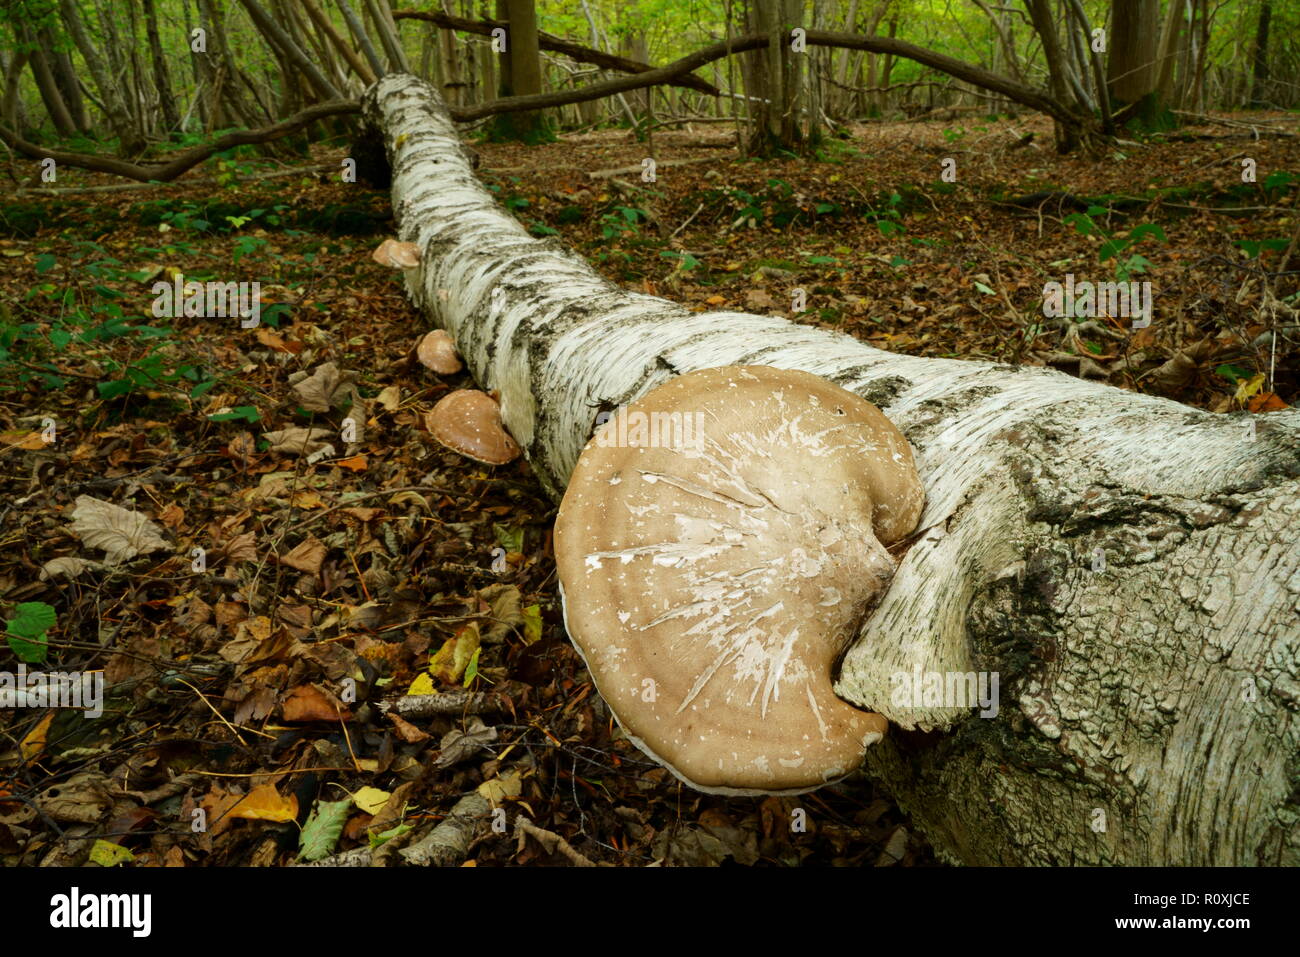 Bracket Fungus growing on a fallen Silver Birch tree Stock Photo